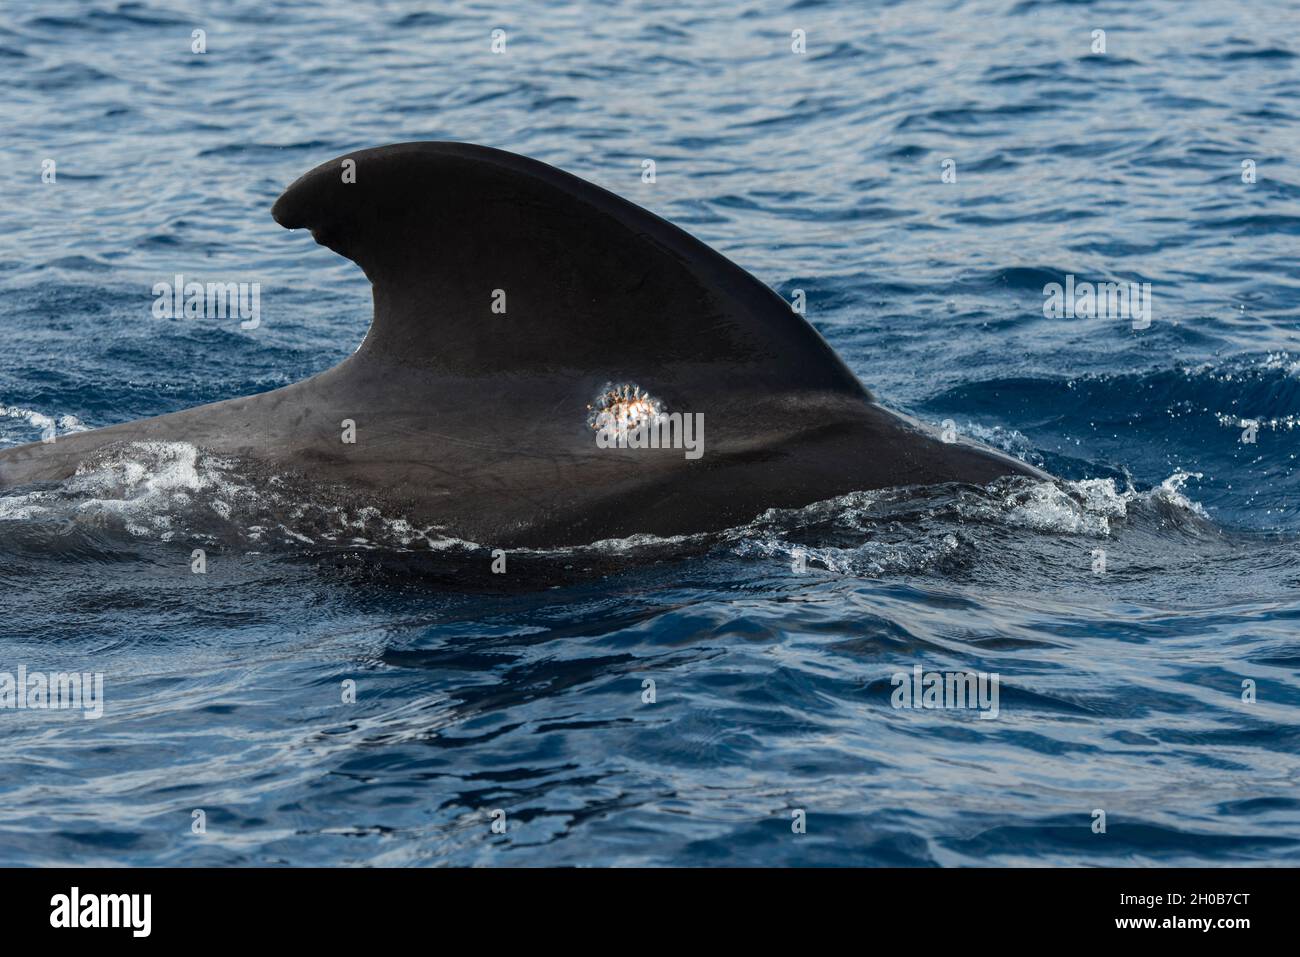 Piojo de mar (Cyamidae). Parásito cutáneo frecuente en cetáceos, en este caso en una pequeña cicatriz de una ballena piloto (Globicephala macrorhynchus). Tenerife Foto de stock